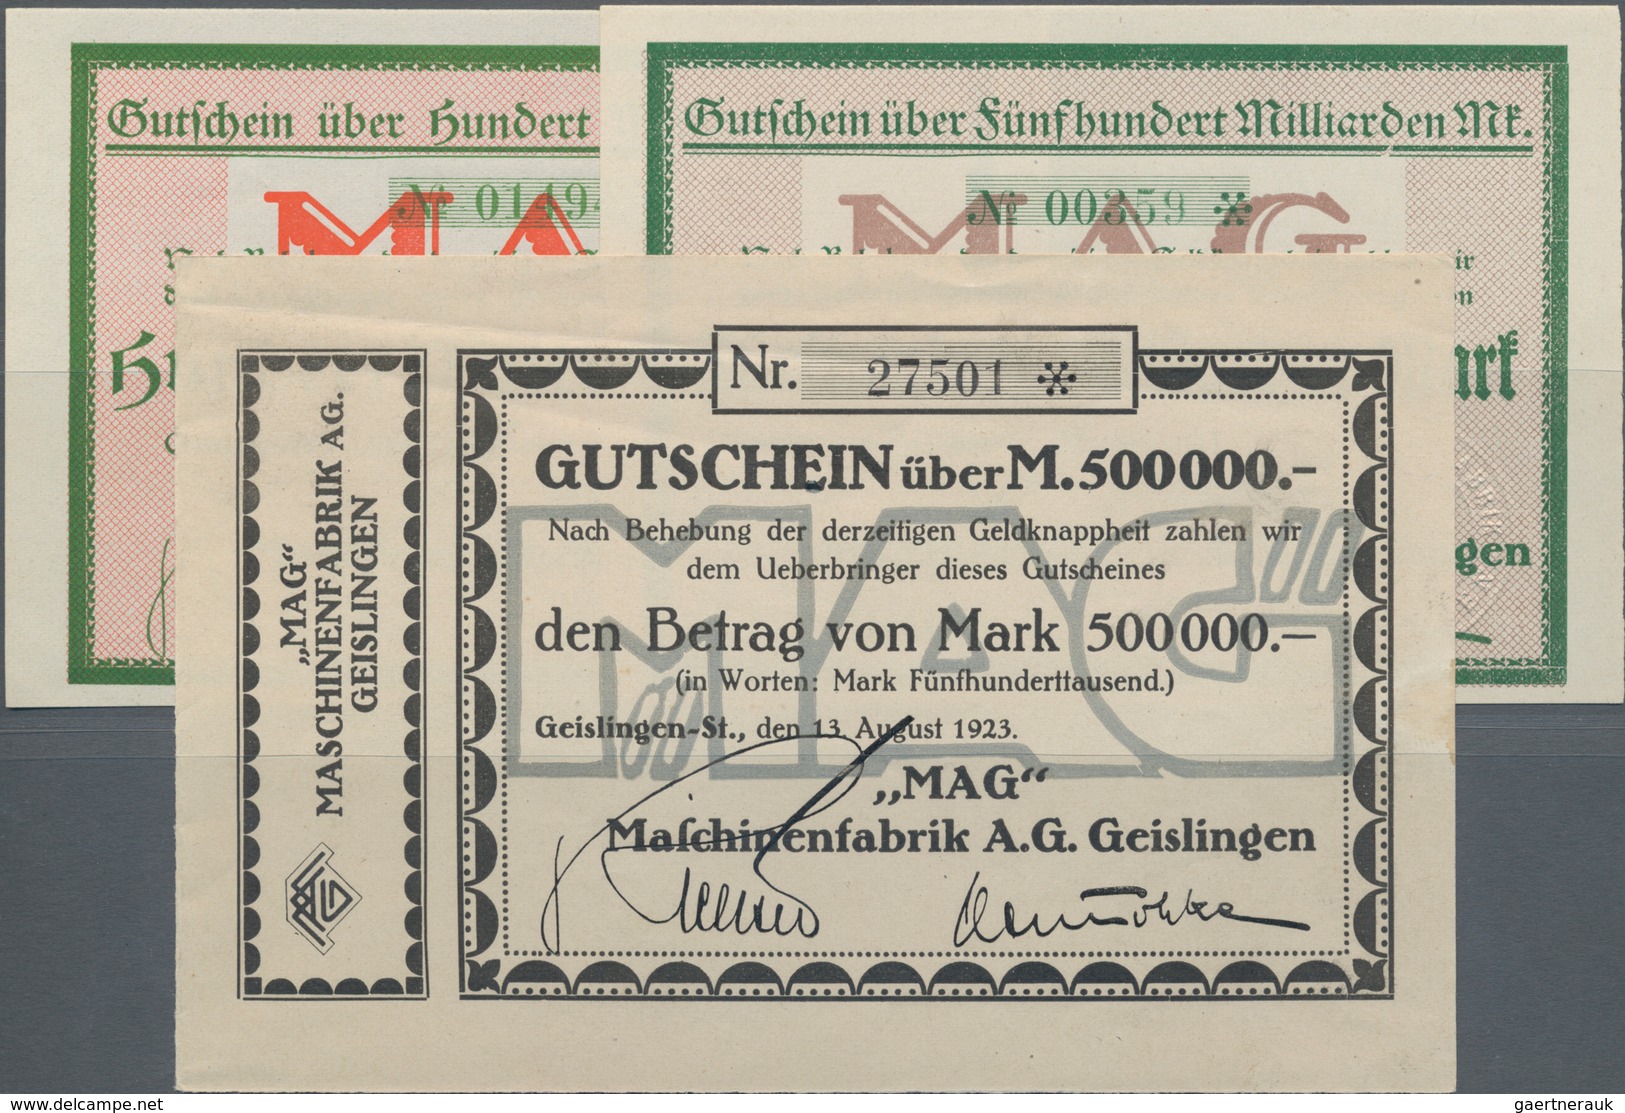 Deutschland - Notgeld - Württemberg: Geislingen, "MAG" Maschinenfabrik AG, 500 Tsd. Mark, 13.8.1923, - [11] Local Banknote Issues